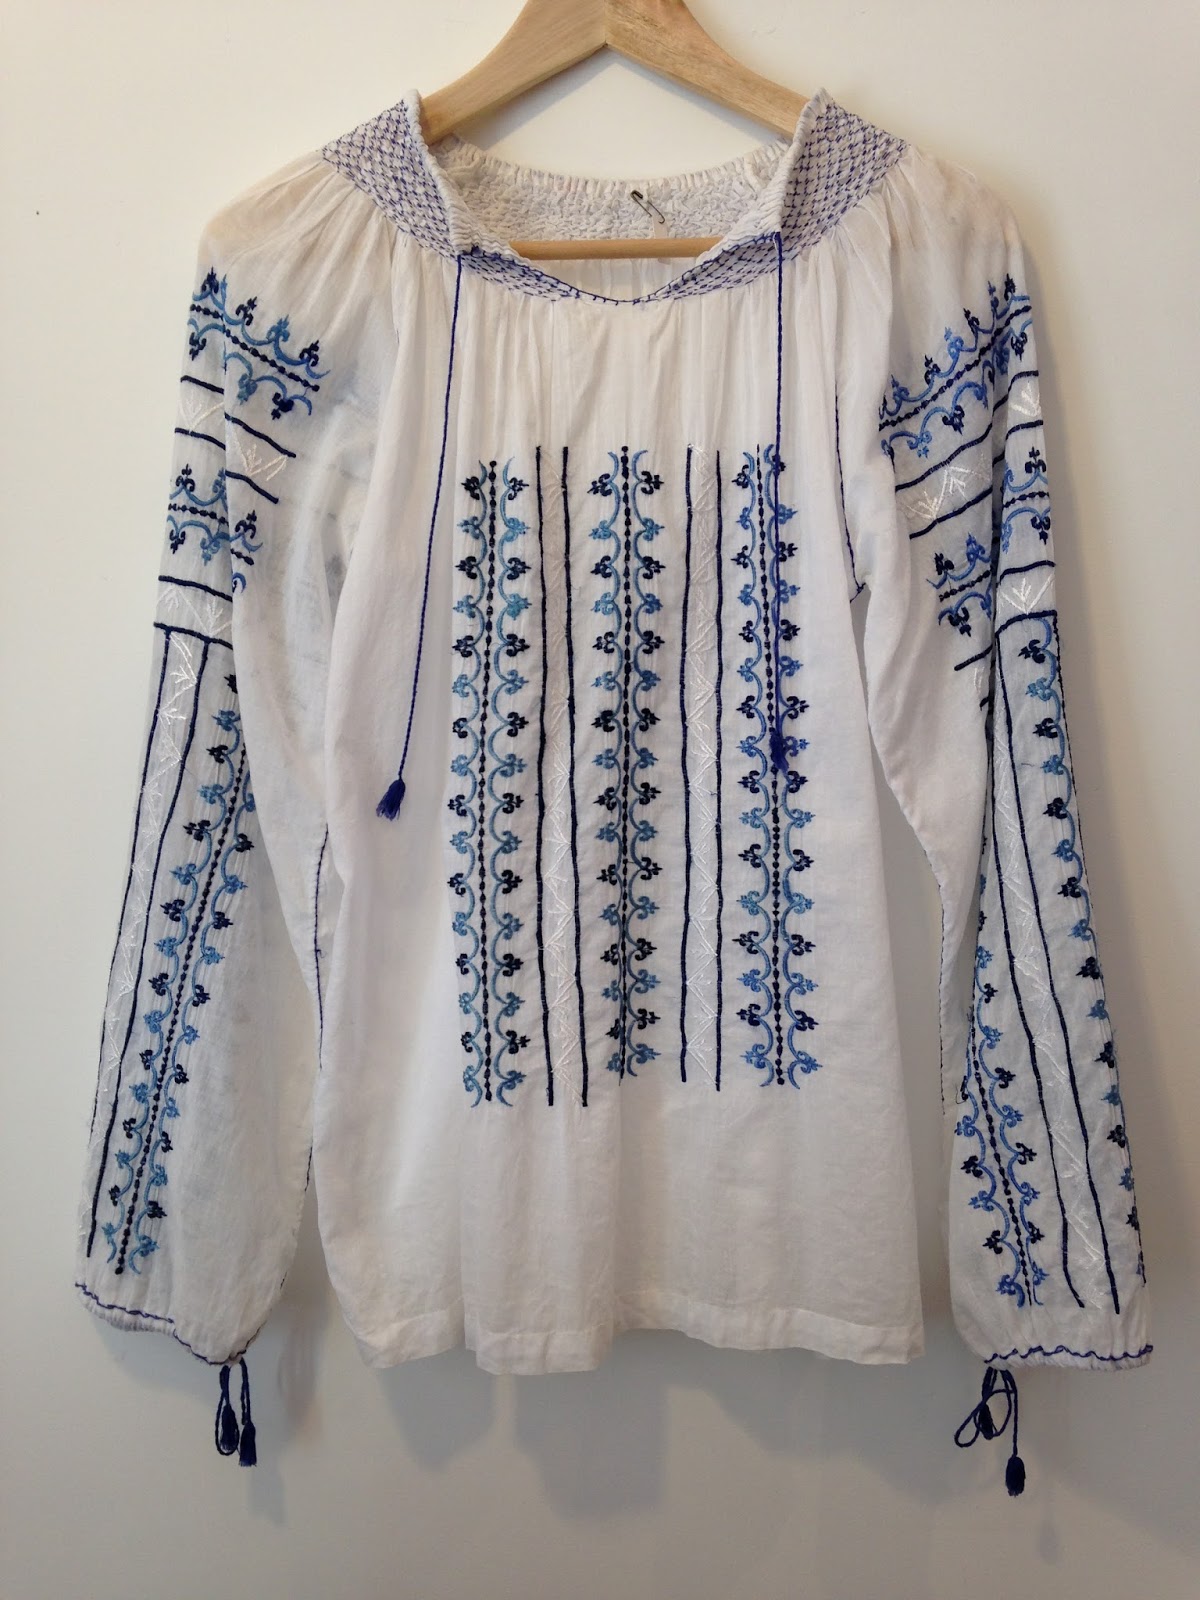 高円寺 古着・ヴィンテージ店 SAMAKI: インドコットン刺繍ブラウス/India cotton embroidered blouse